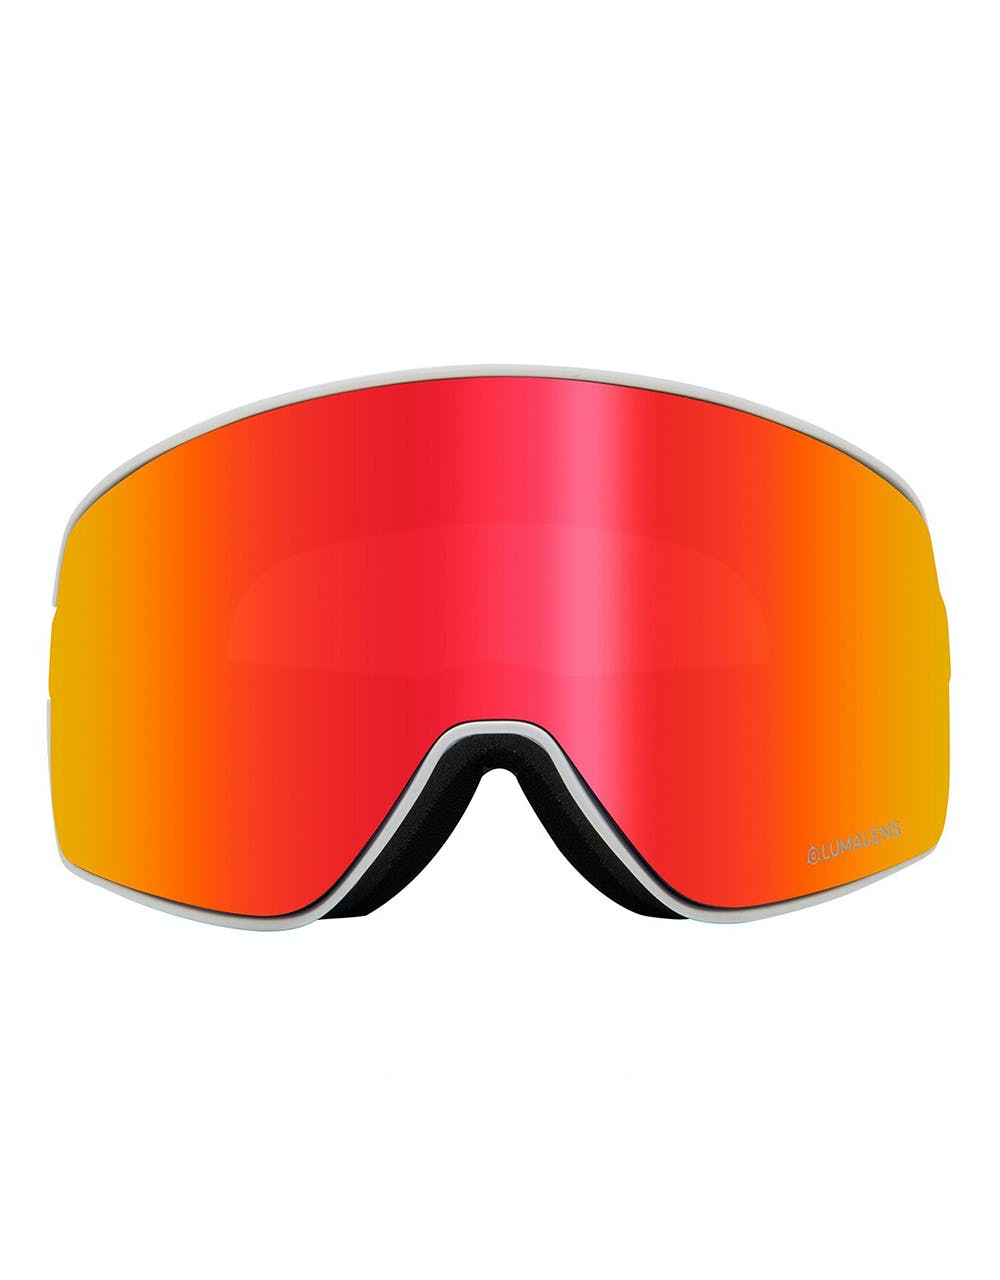 Dragon NFX2 Snowboard Goggles - Danny Davis/LUMALENS® Red Ion